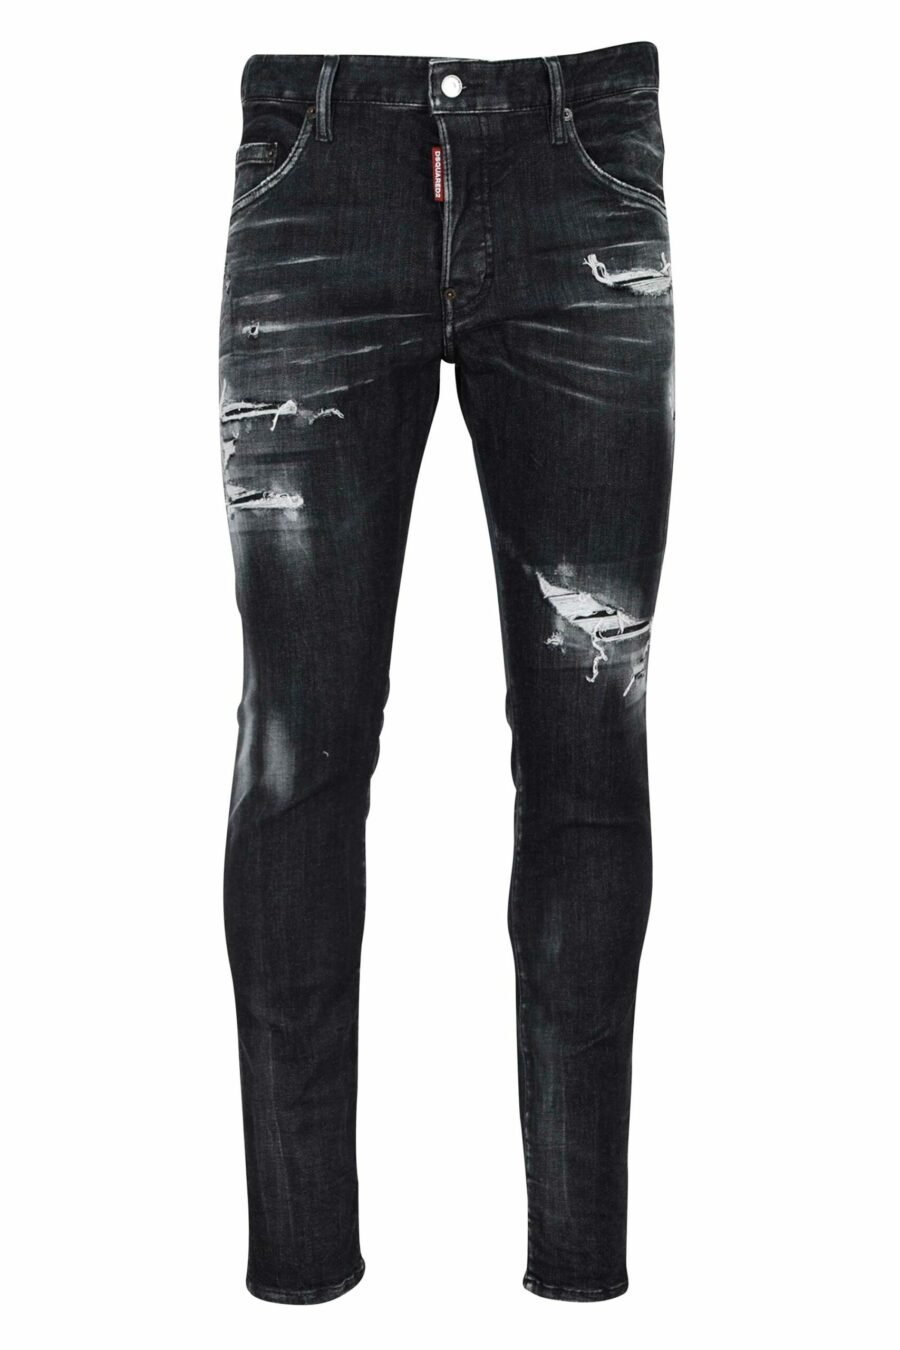 Pantalón vaquero "skater jean" negro con rotos y semidesgastado - 8054148101411 scaled